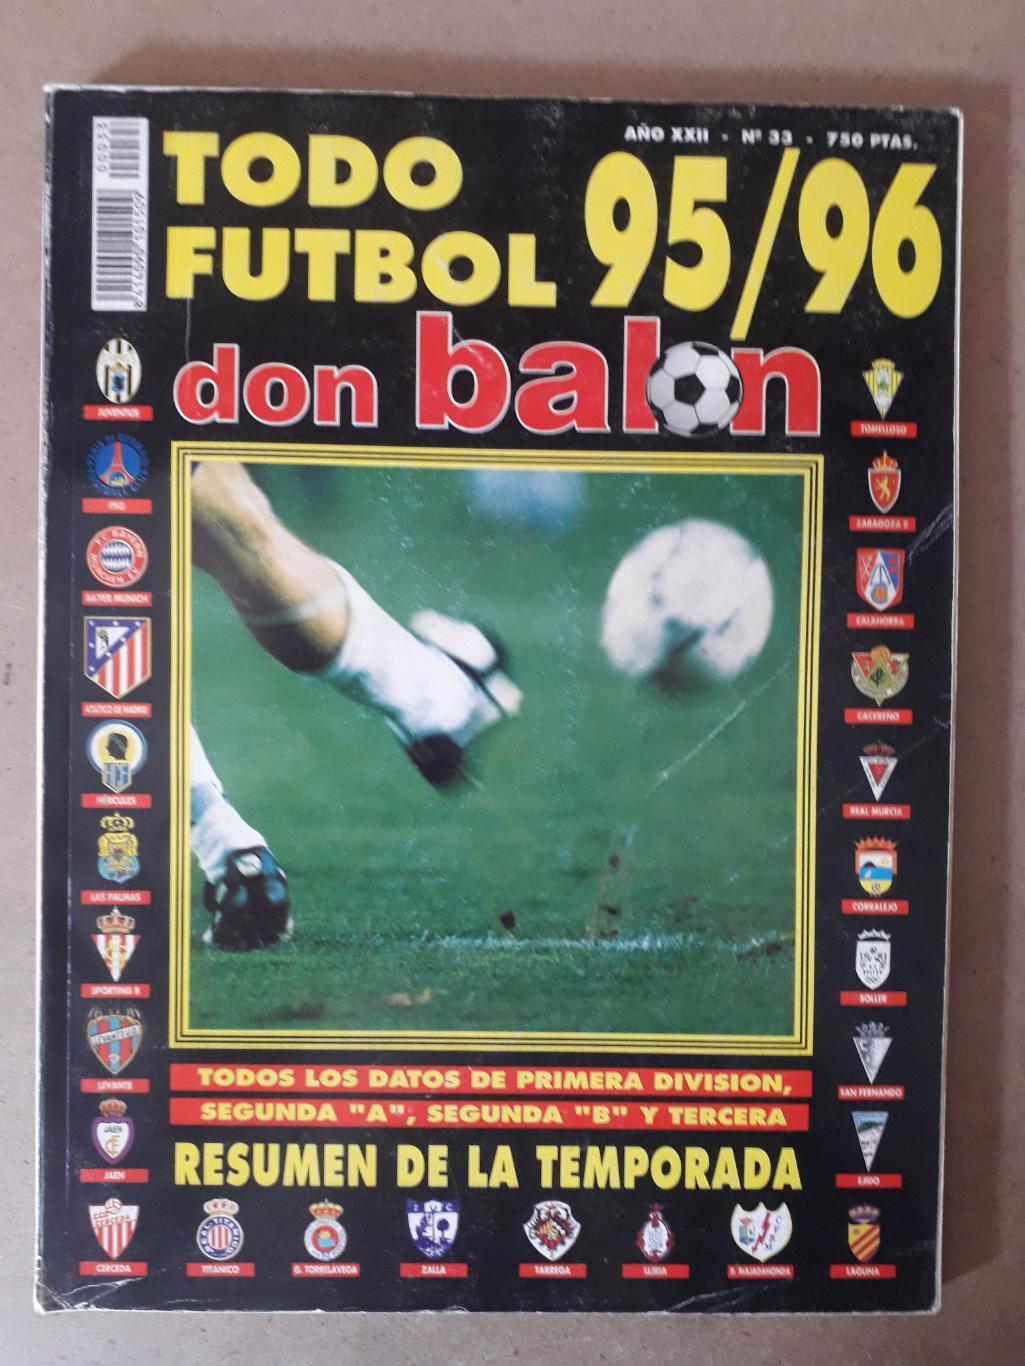 Don Balon todo futbol 1995/96